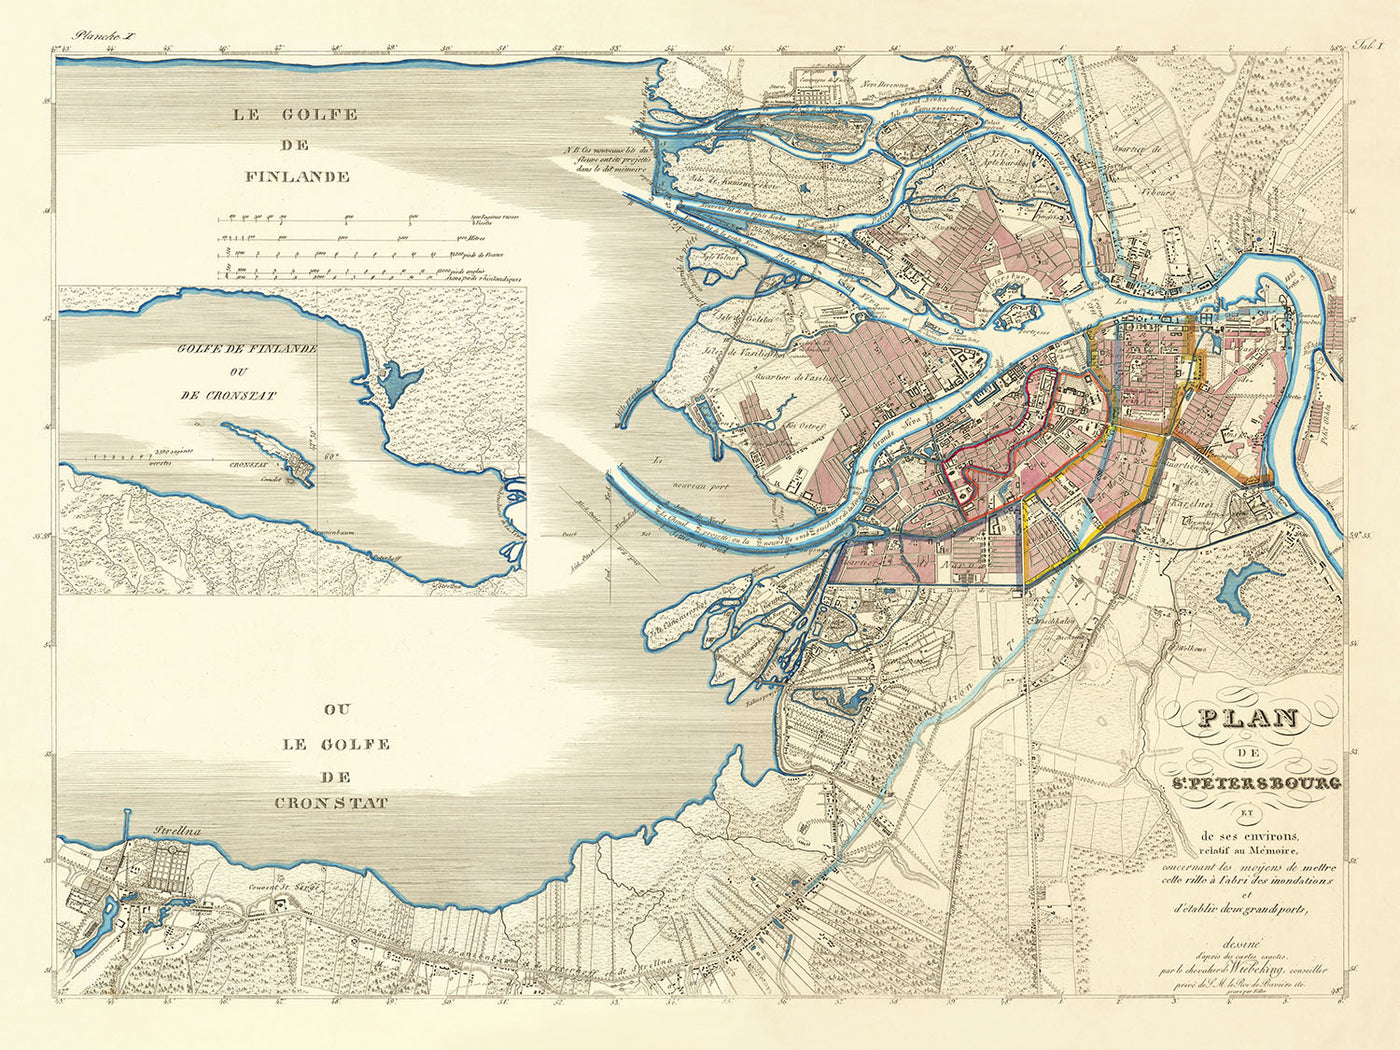 Ancienne carte de Saint-Pétersbourg par Wiebeking, 1840 : Perspective Nevski, île Vassilievski, rivière Fontanka, quai de l'Amirauté, inondation de 1824